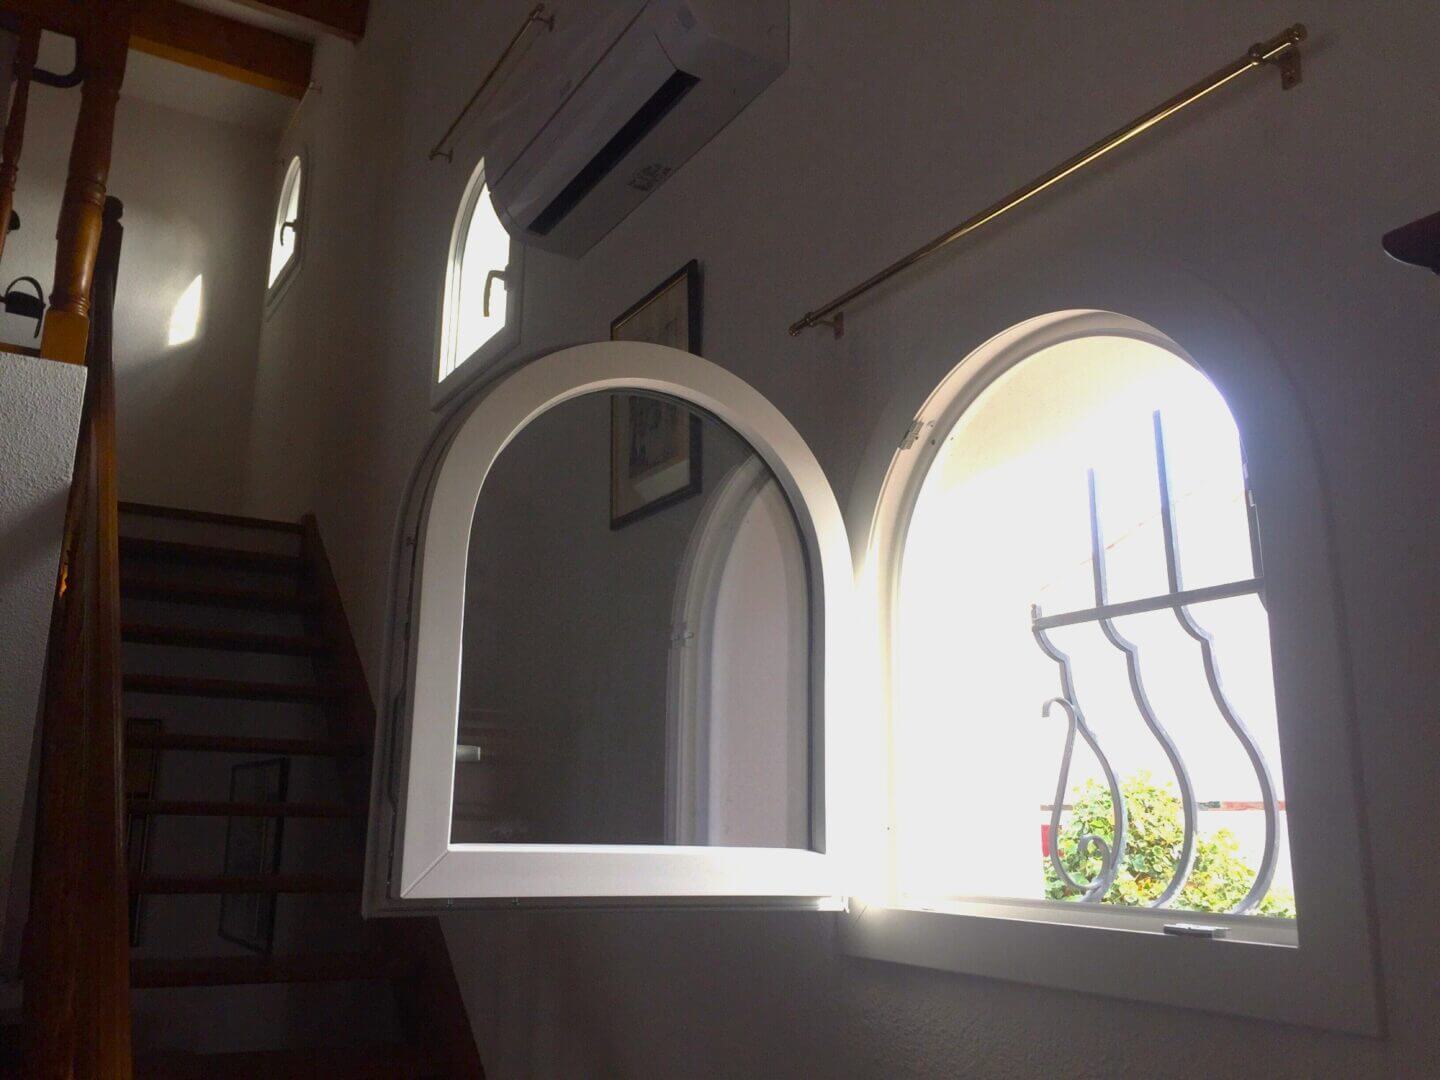 Fenêtres arrondies (cintrées) : anses de panier, plein cintre, arc